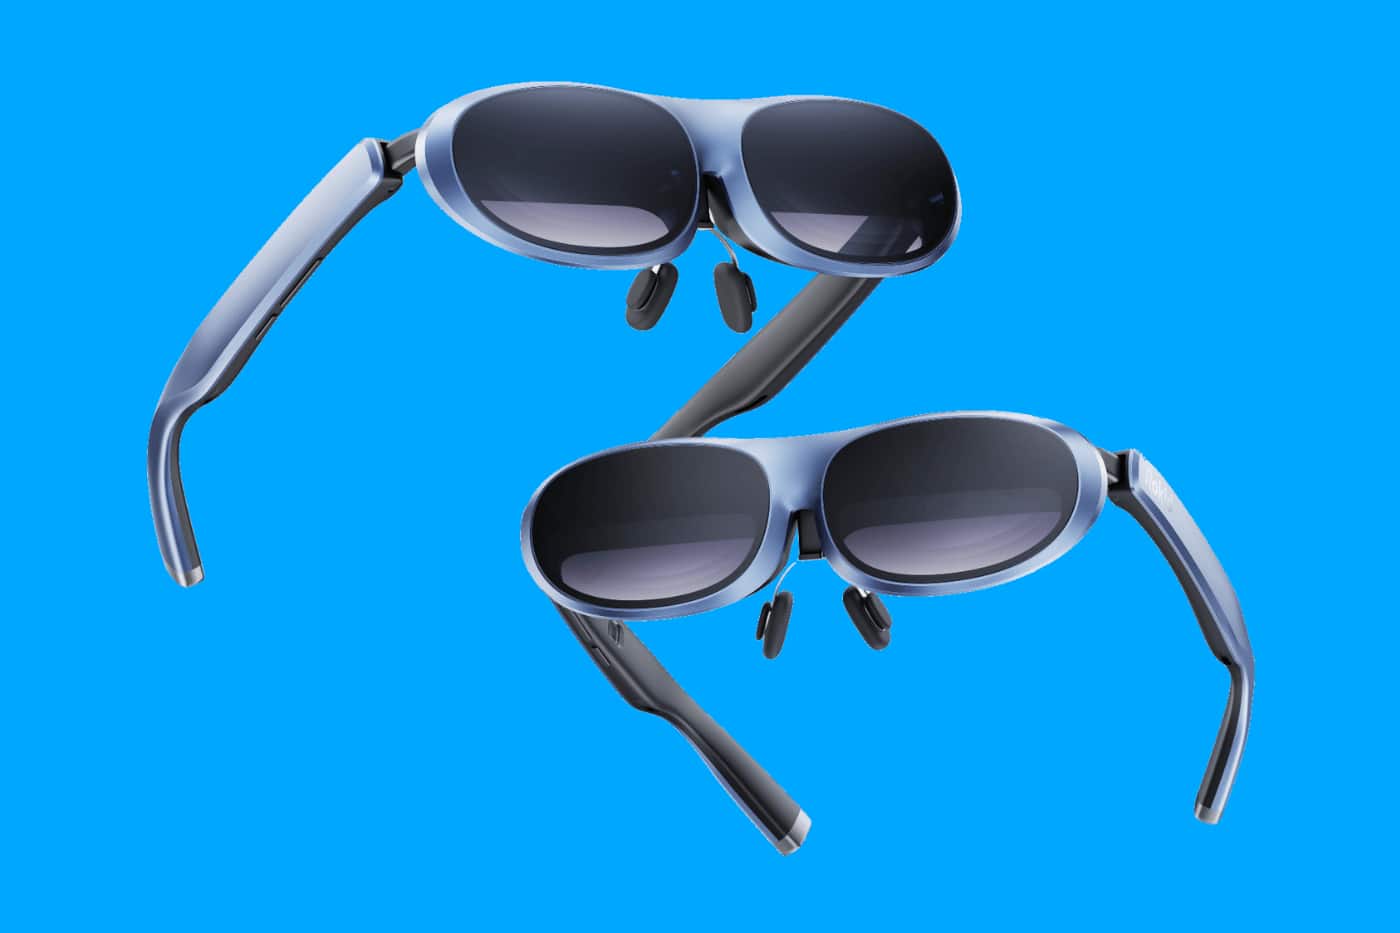 Rokid presenta las gafas inteligentes Max AR